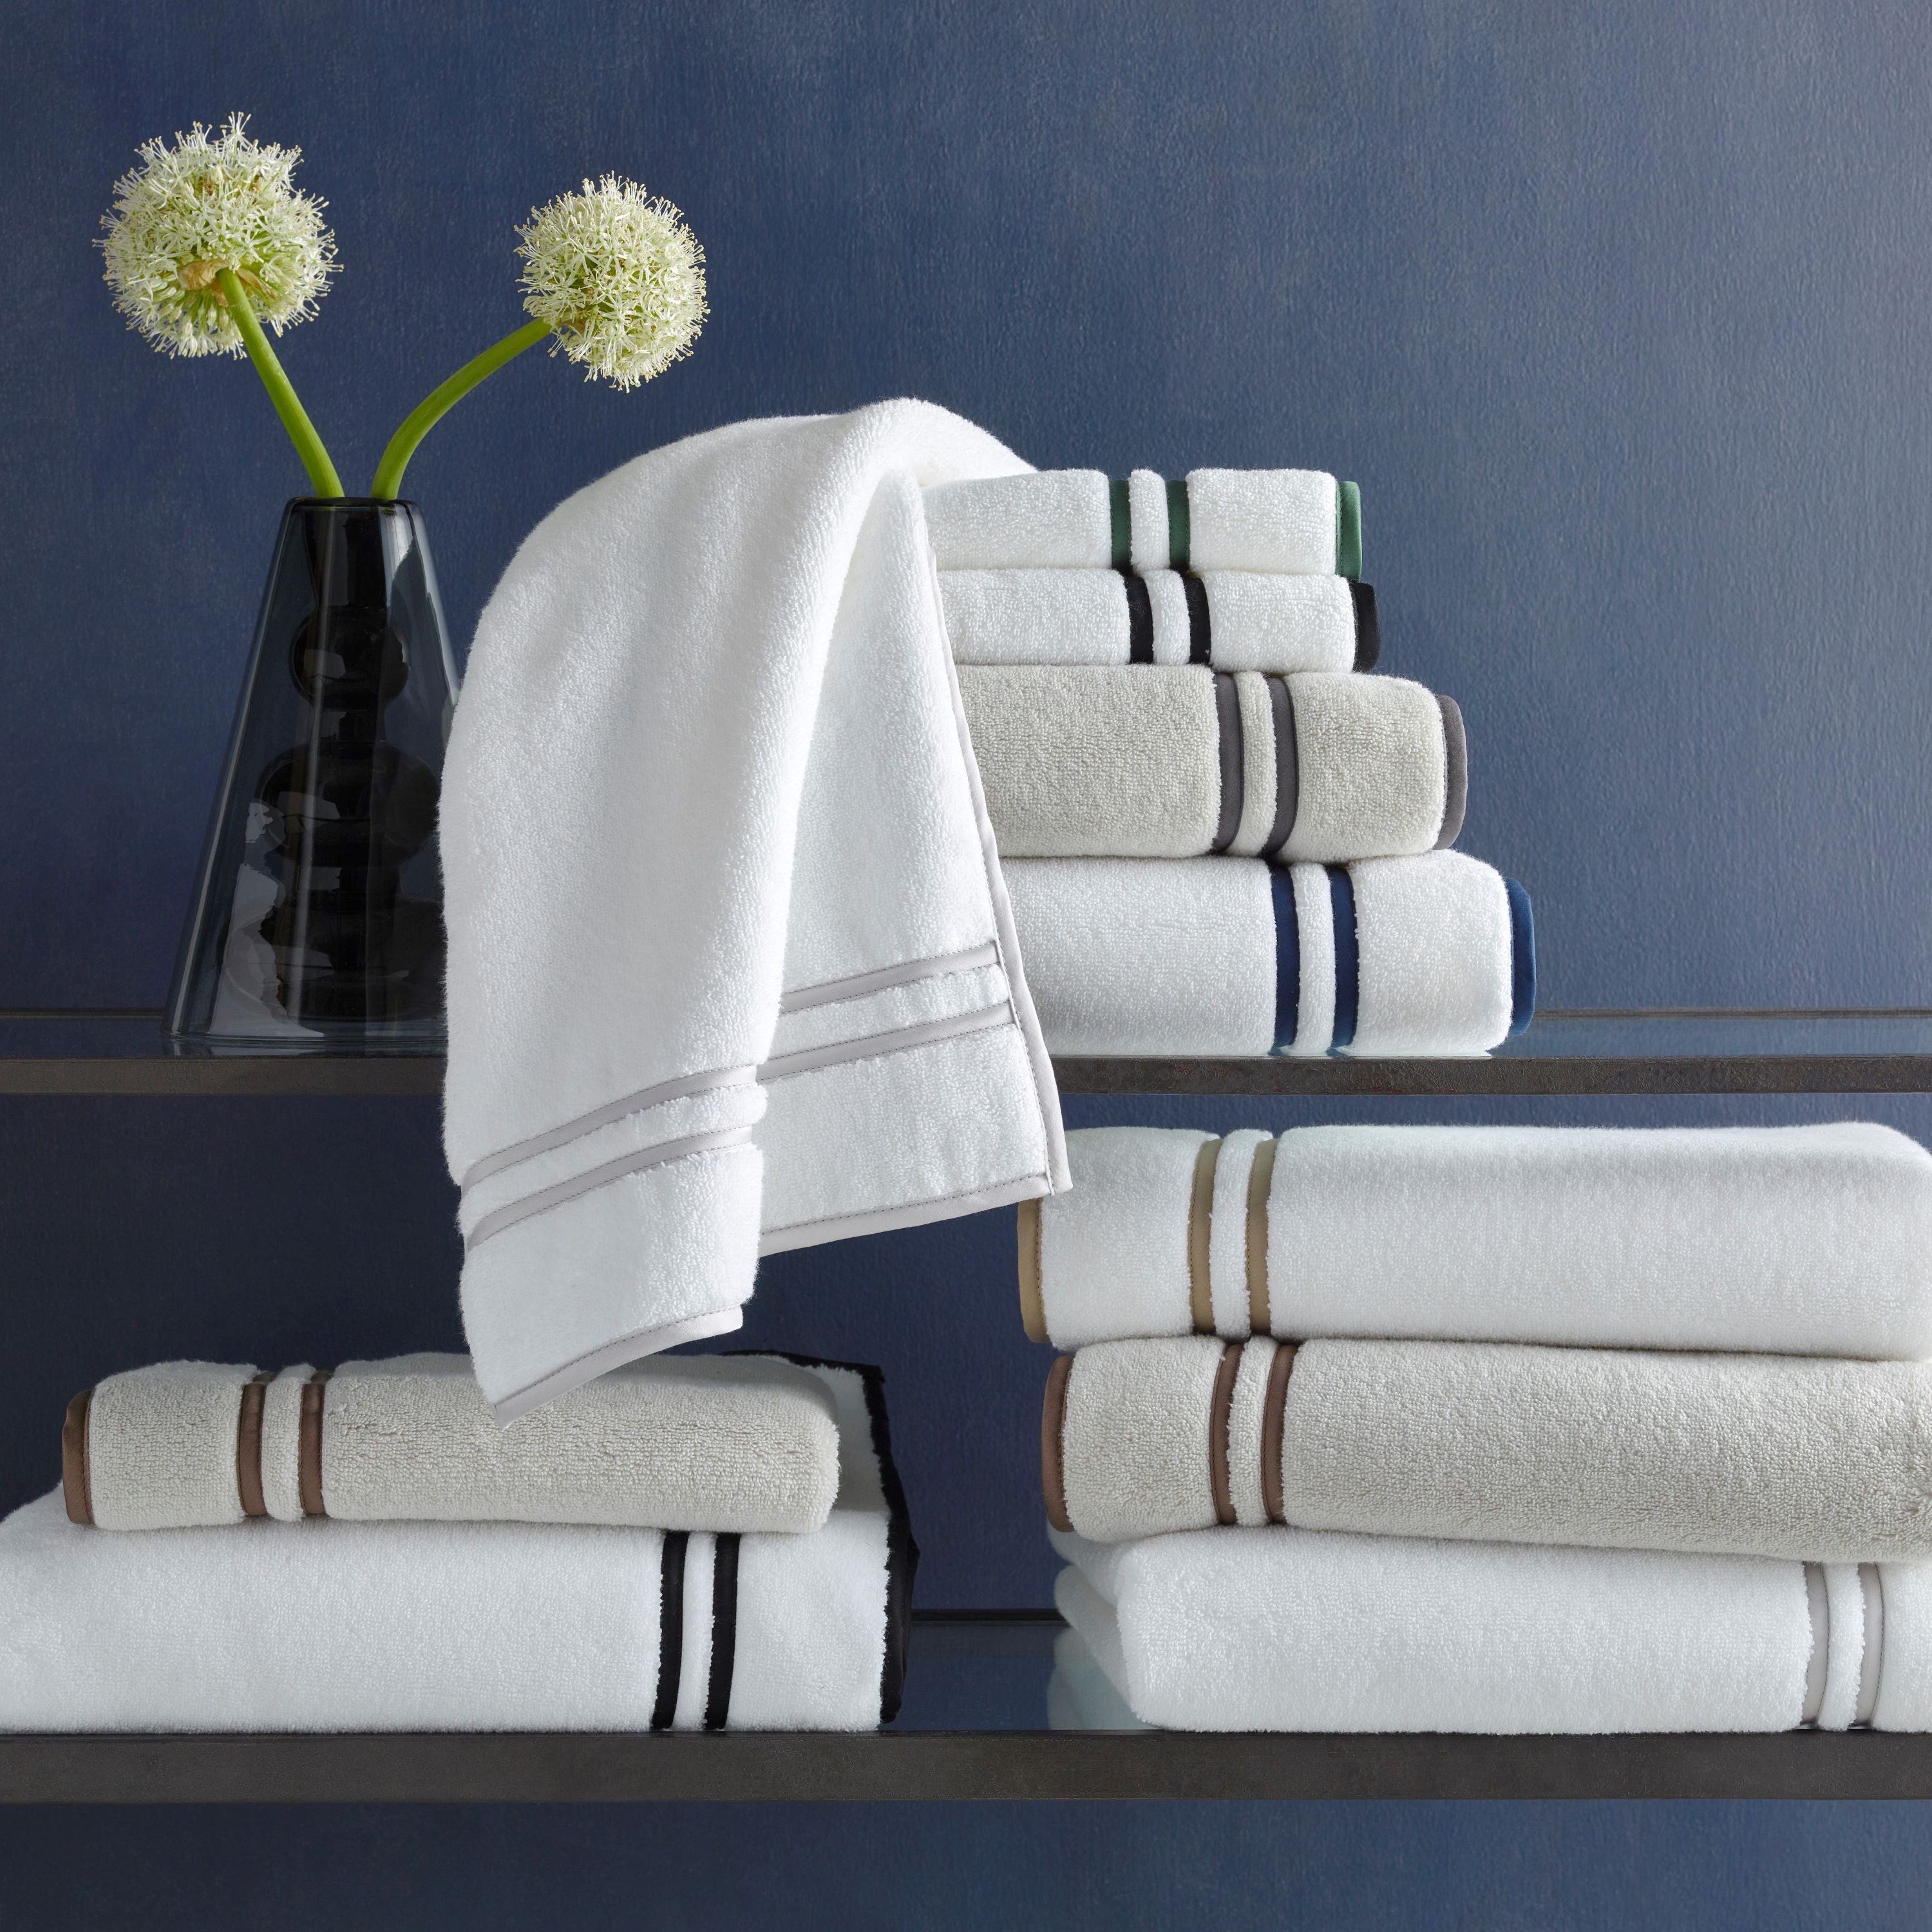 Ultra-Plush Bath Towels – Towelsy